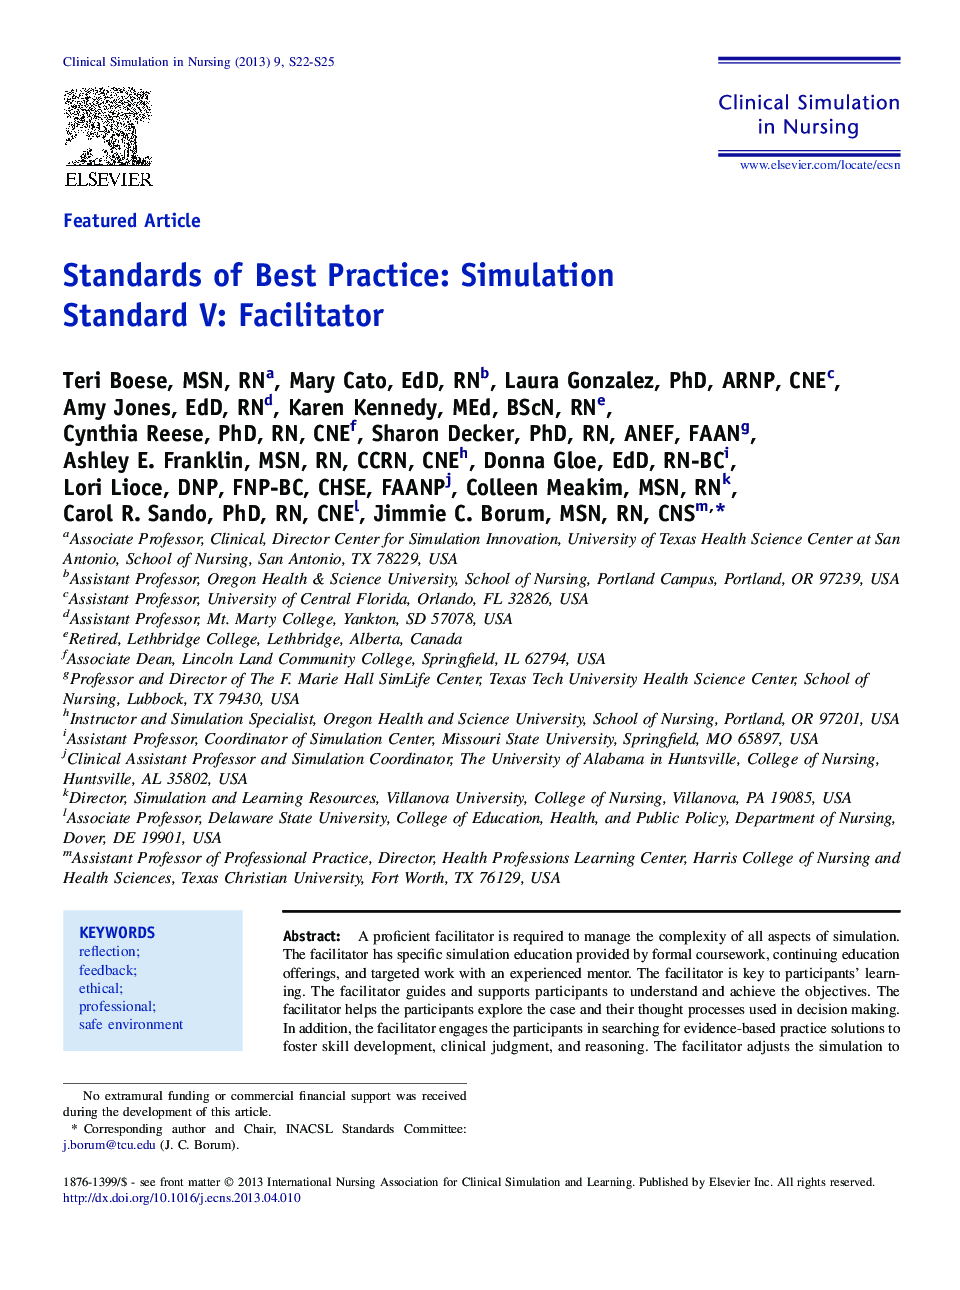 Standards of Best Practice: Simulation Standard V: Facilitator 